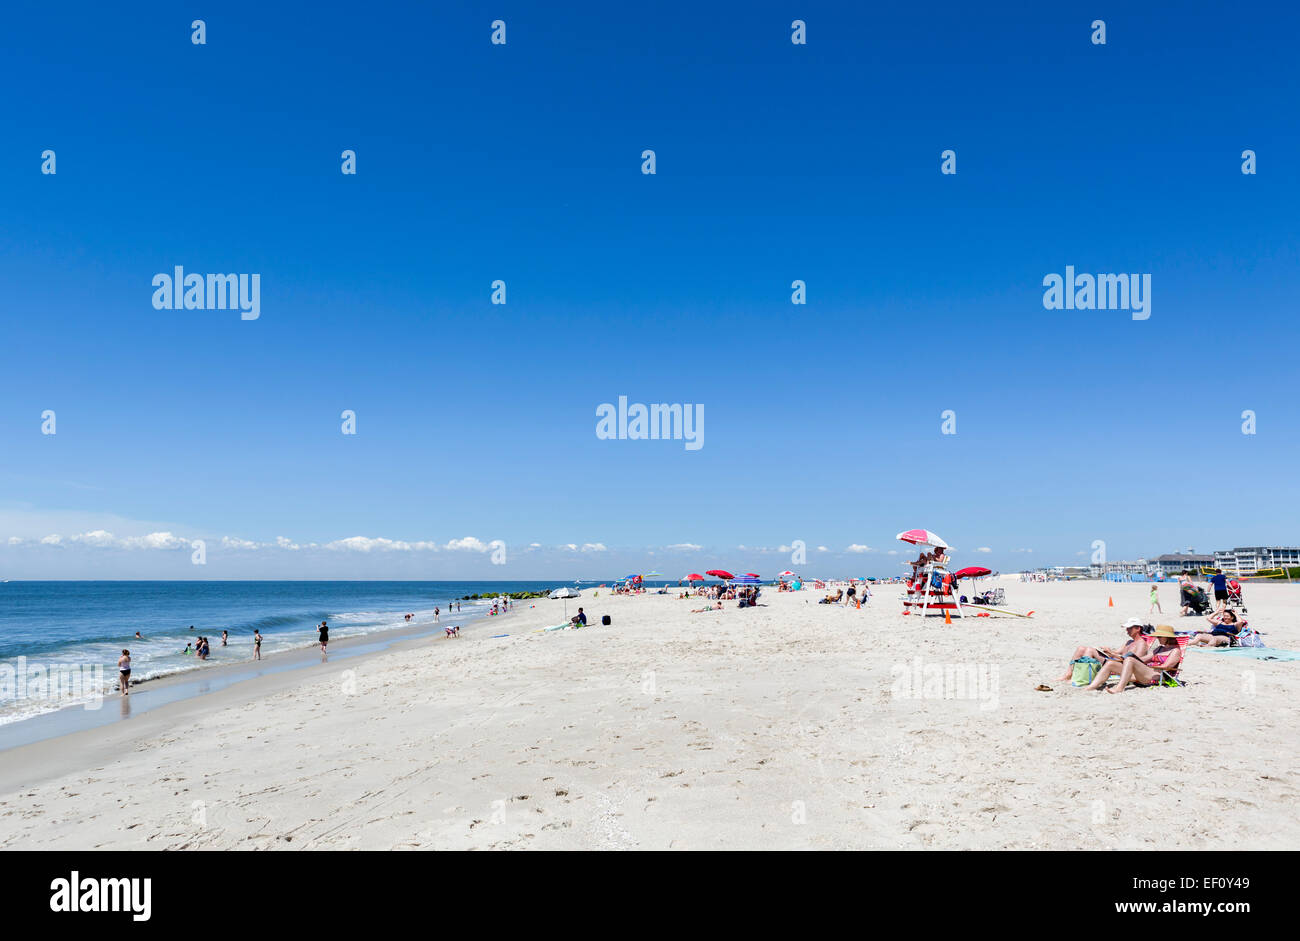 La plage de Cape May, New Jersey, USA Banque D'Images